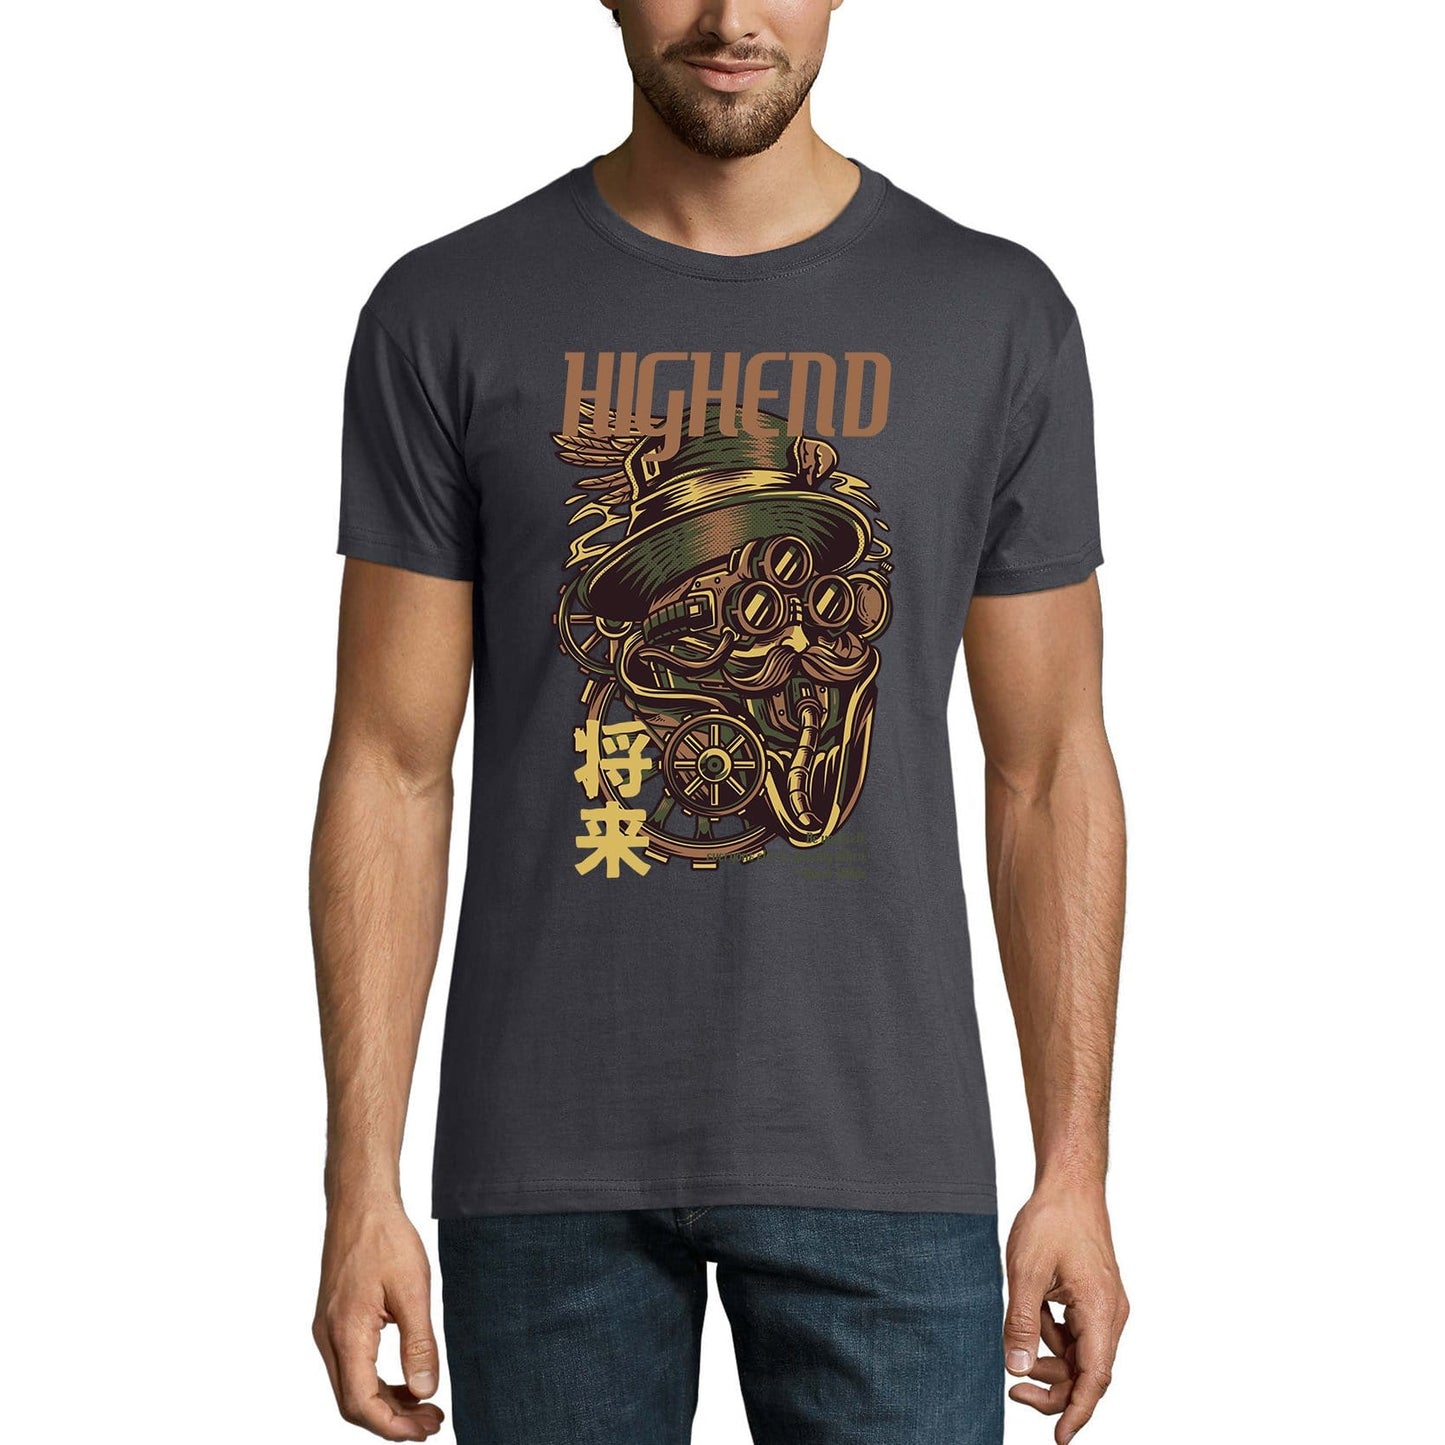 ULTRABASIC Herren-Neuheits-T-Shirt Highend – Roboter-T-Shirt